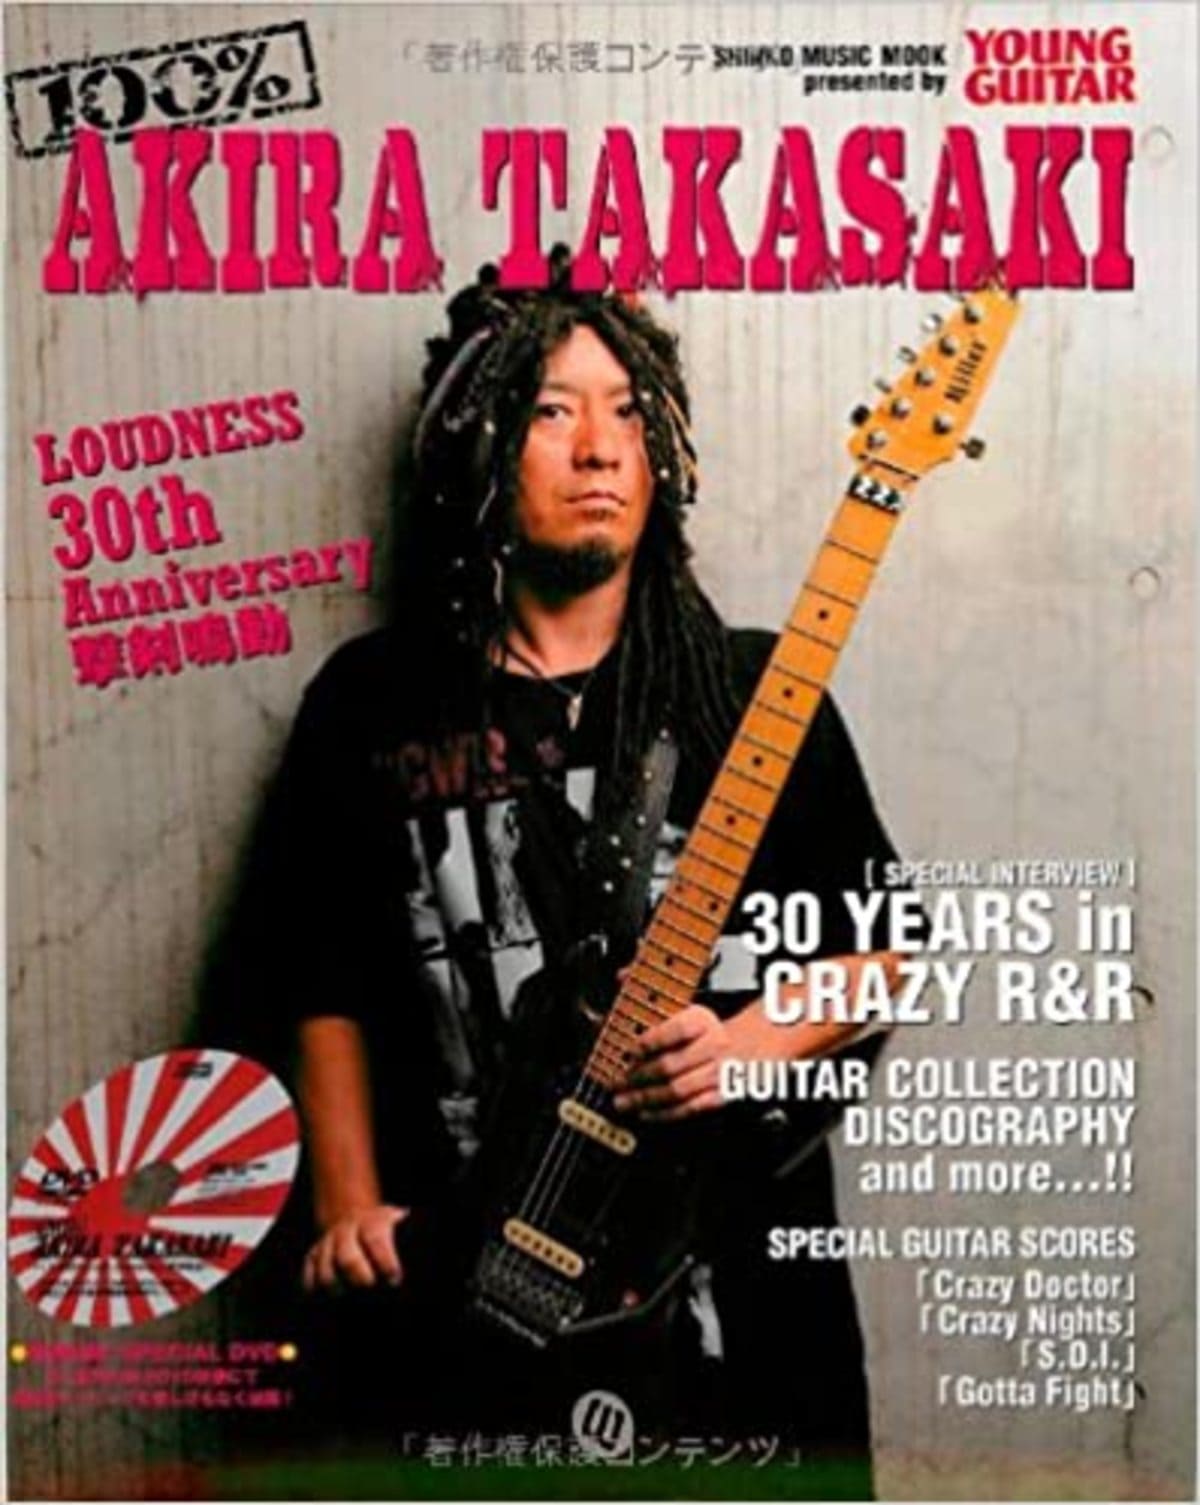 高崎 晃 Akira Takasaki エレキギタリスト名鑑 インストなギターの名曲 名盤紹介所